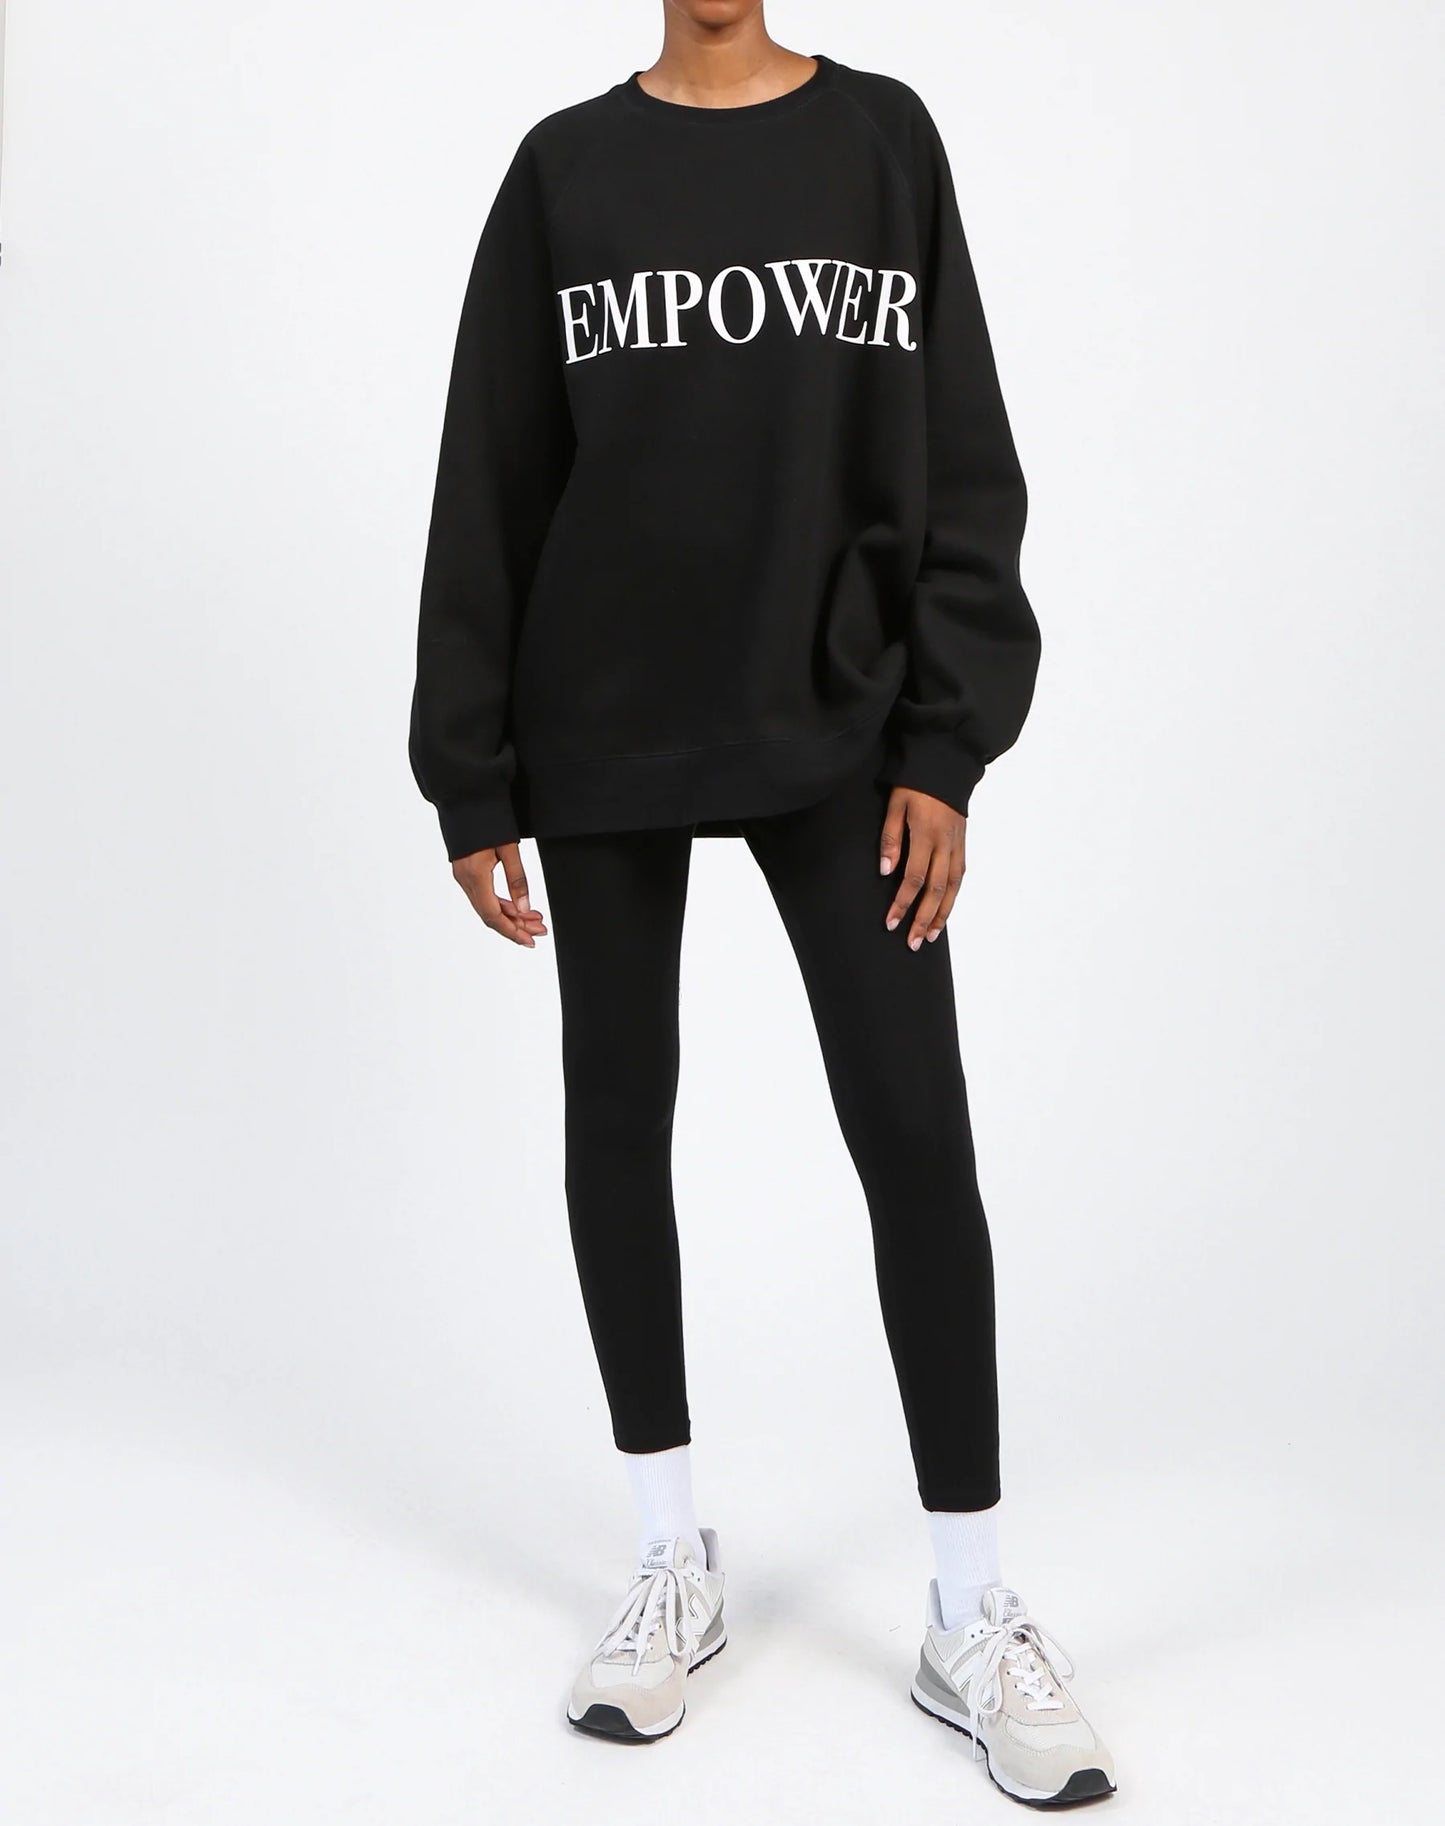 Empower "Not Your Boyfriend's Crew" Brunette The Label